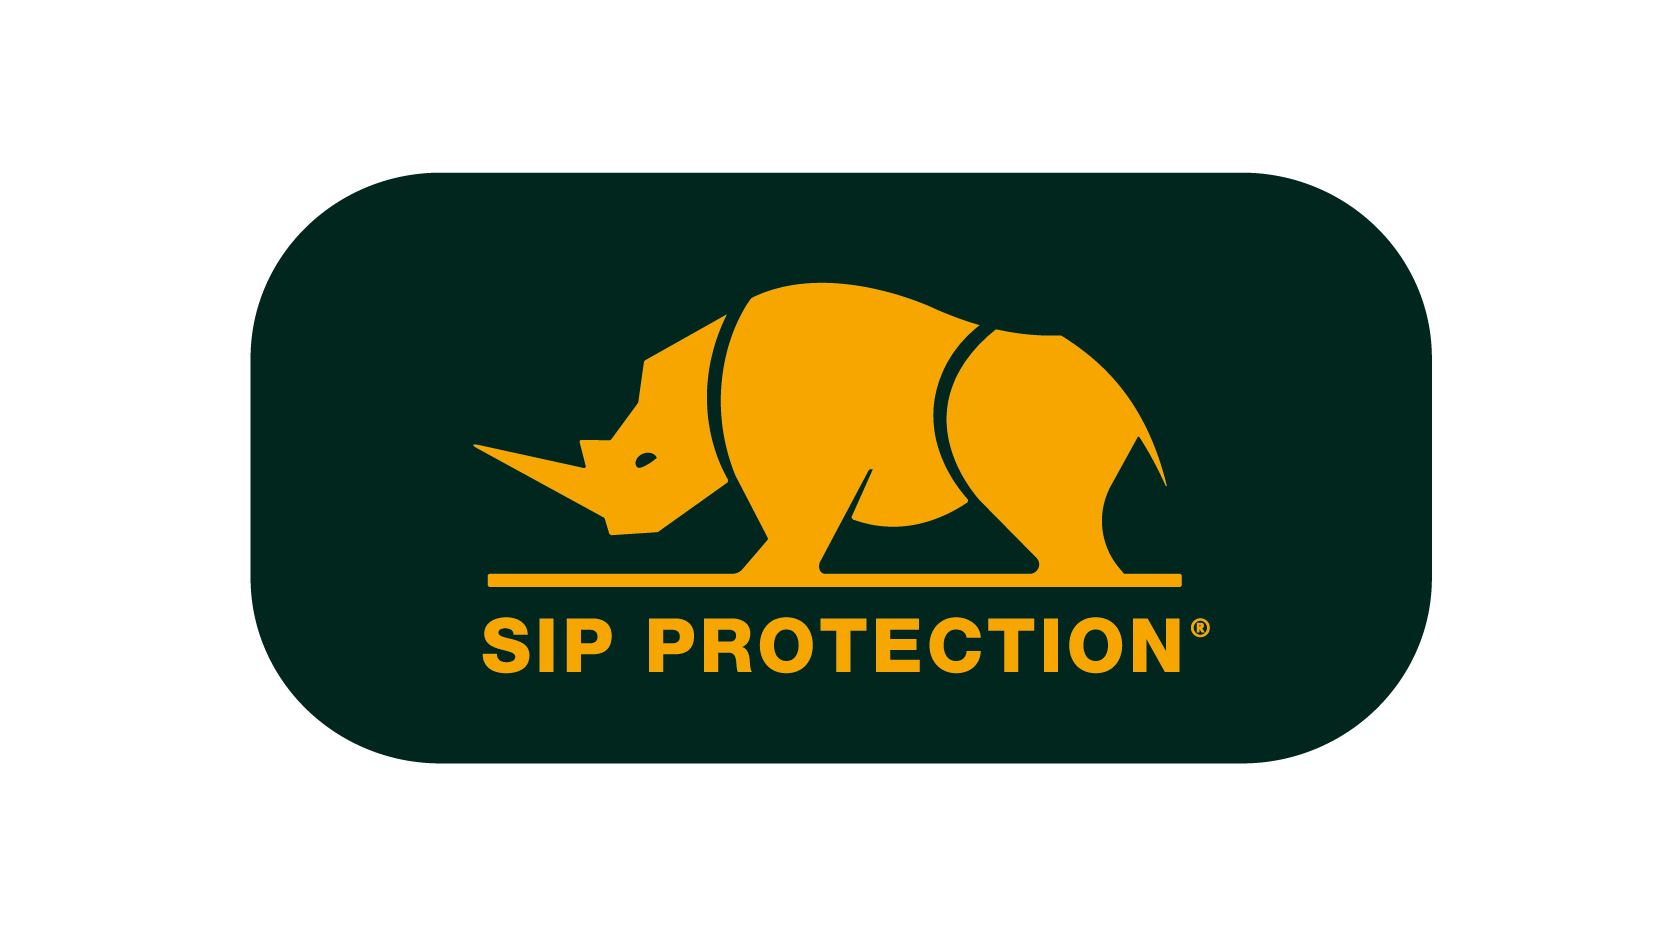 DPM motis grossiste officiel de Sip Protection